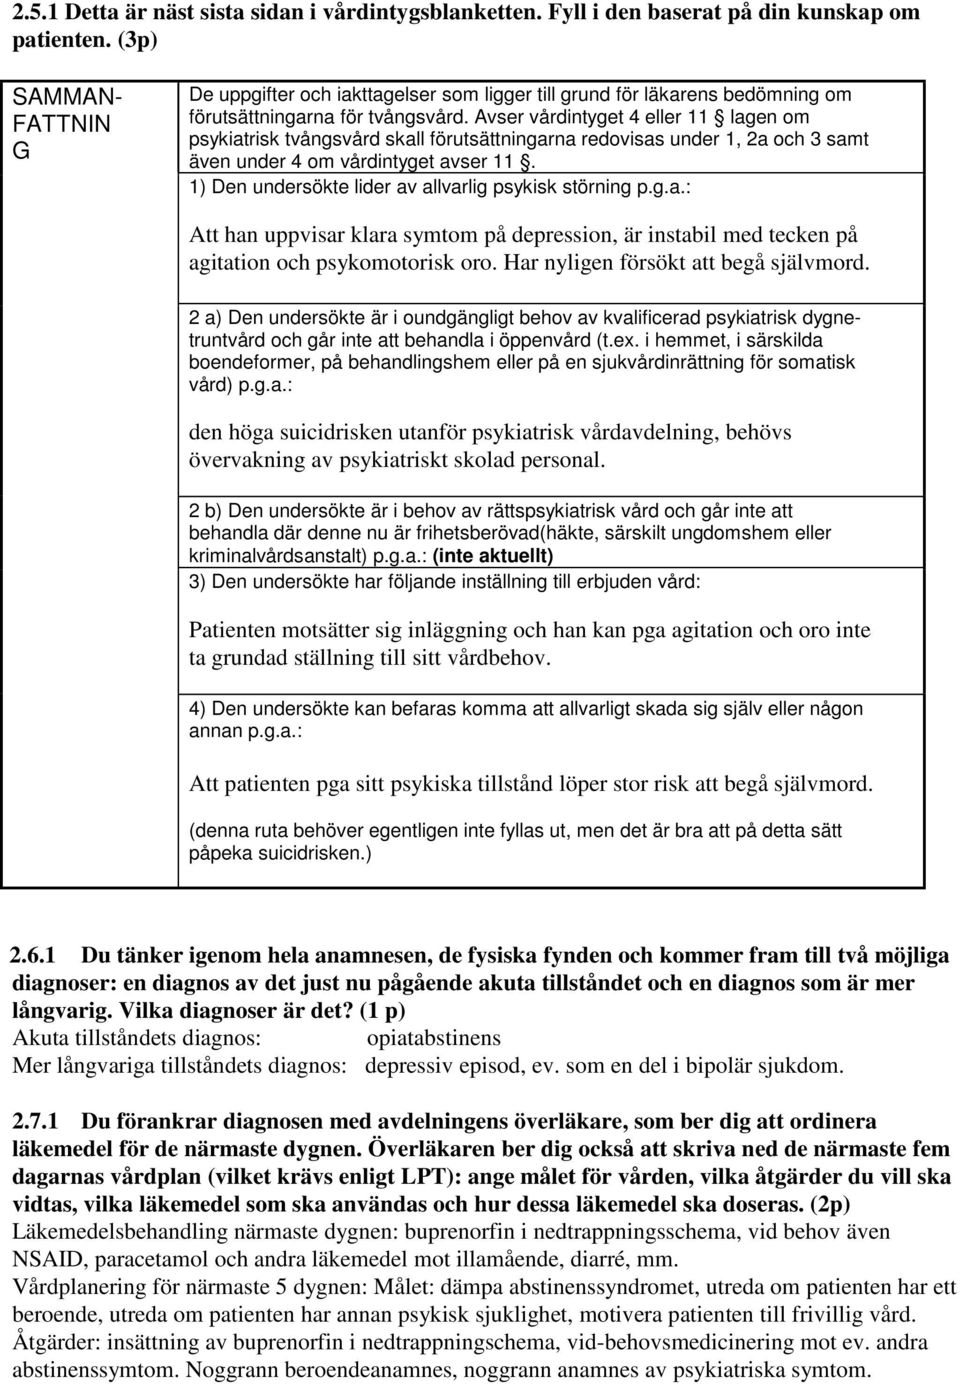 Avser vårdintyget 4 eller 11 lagen om psykiatrisk tvångsvård skall förutsättningarna redovisas under 1, 2a och 3 samt även under 4 om vårdintyget avser 11.